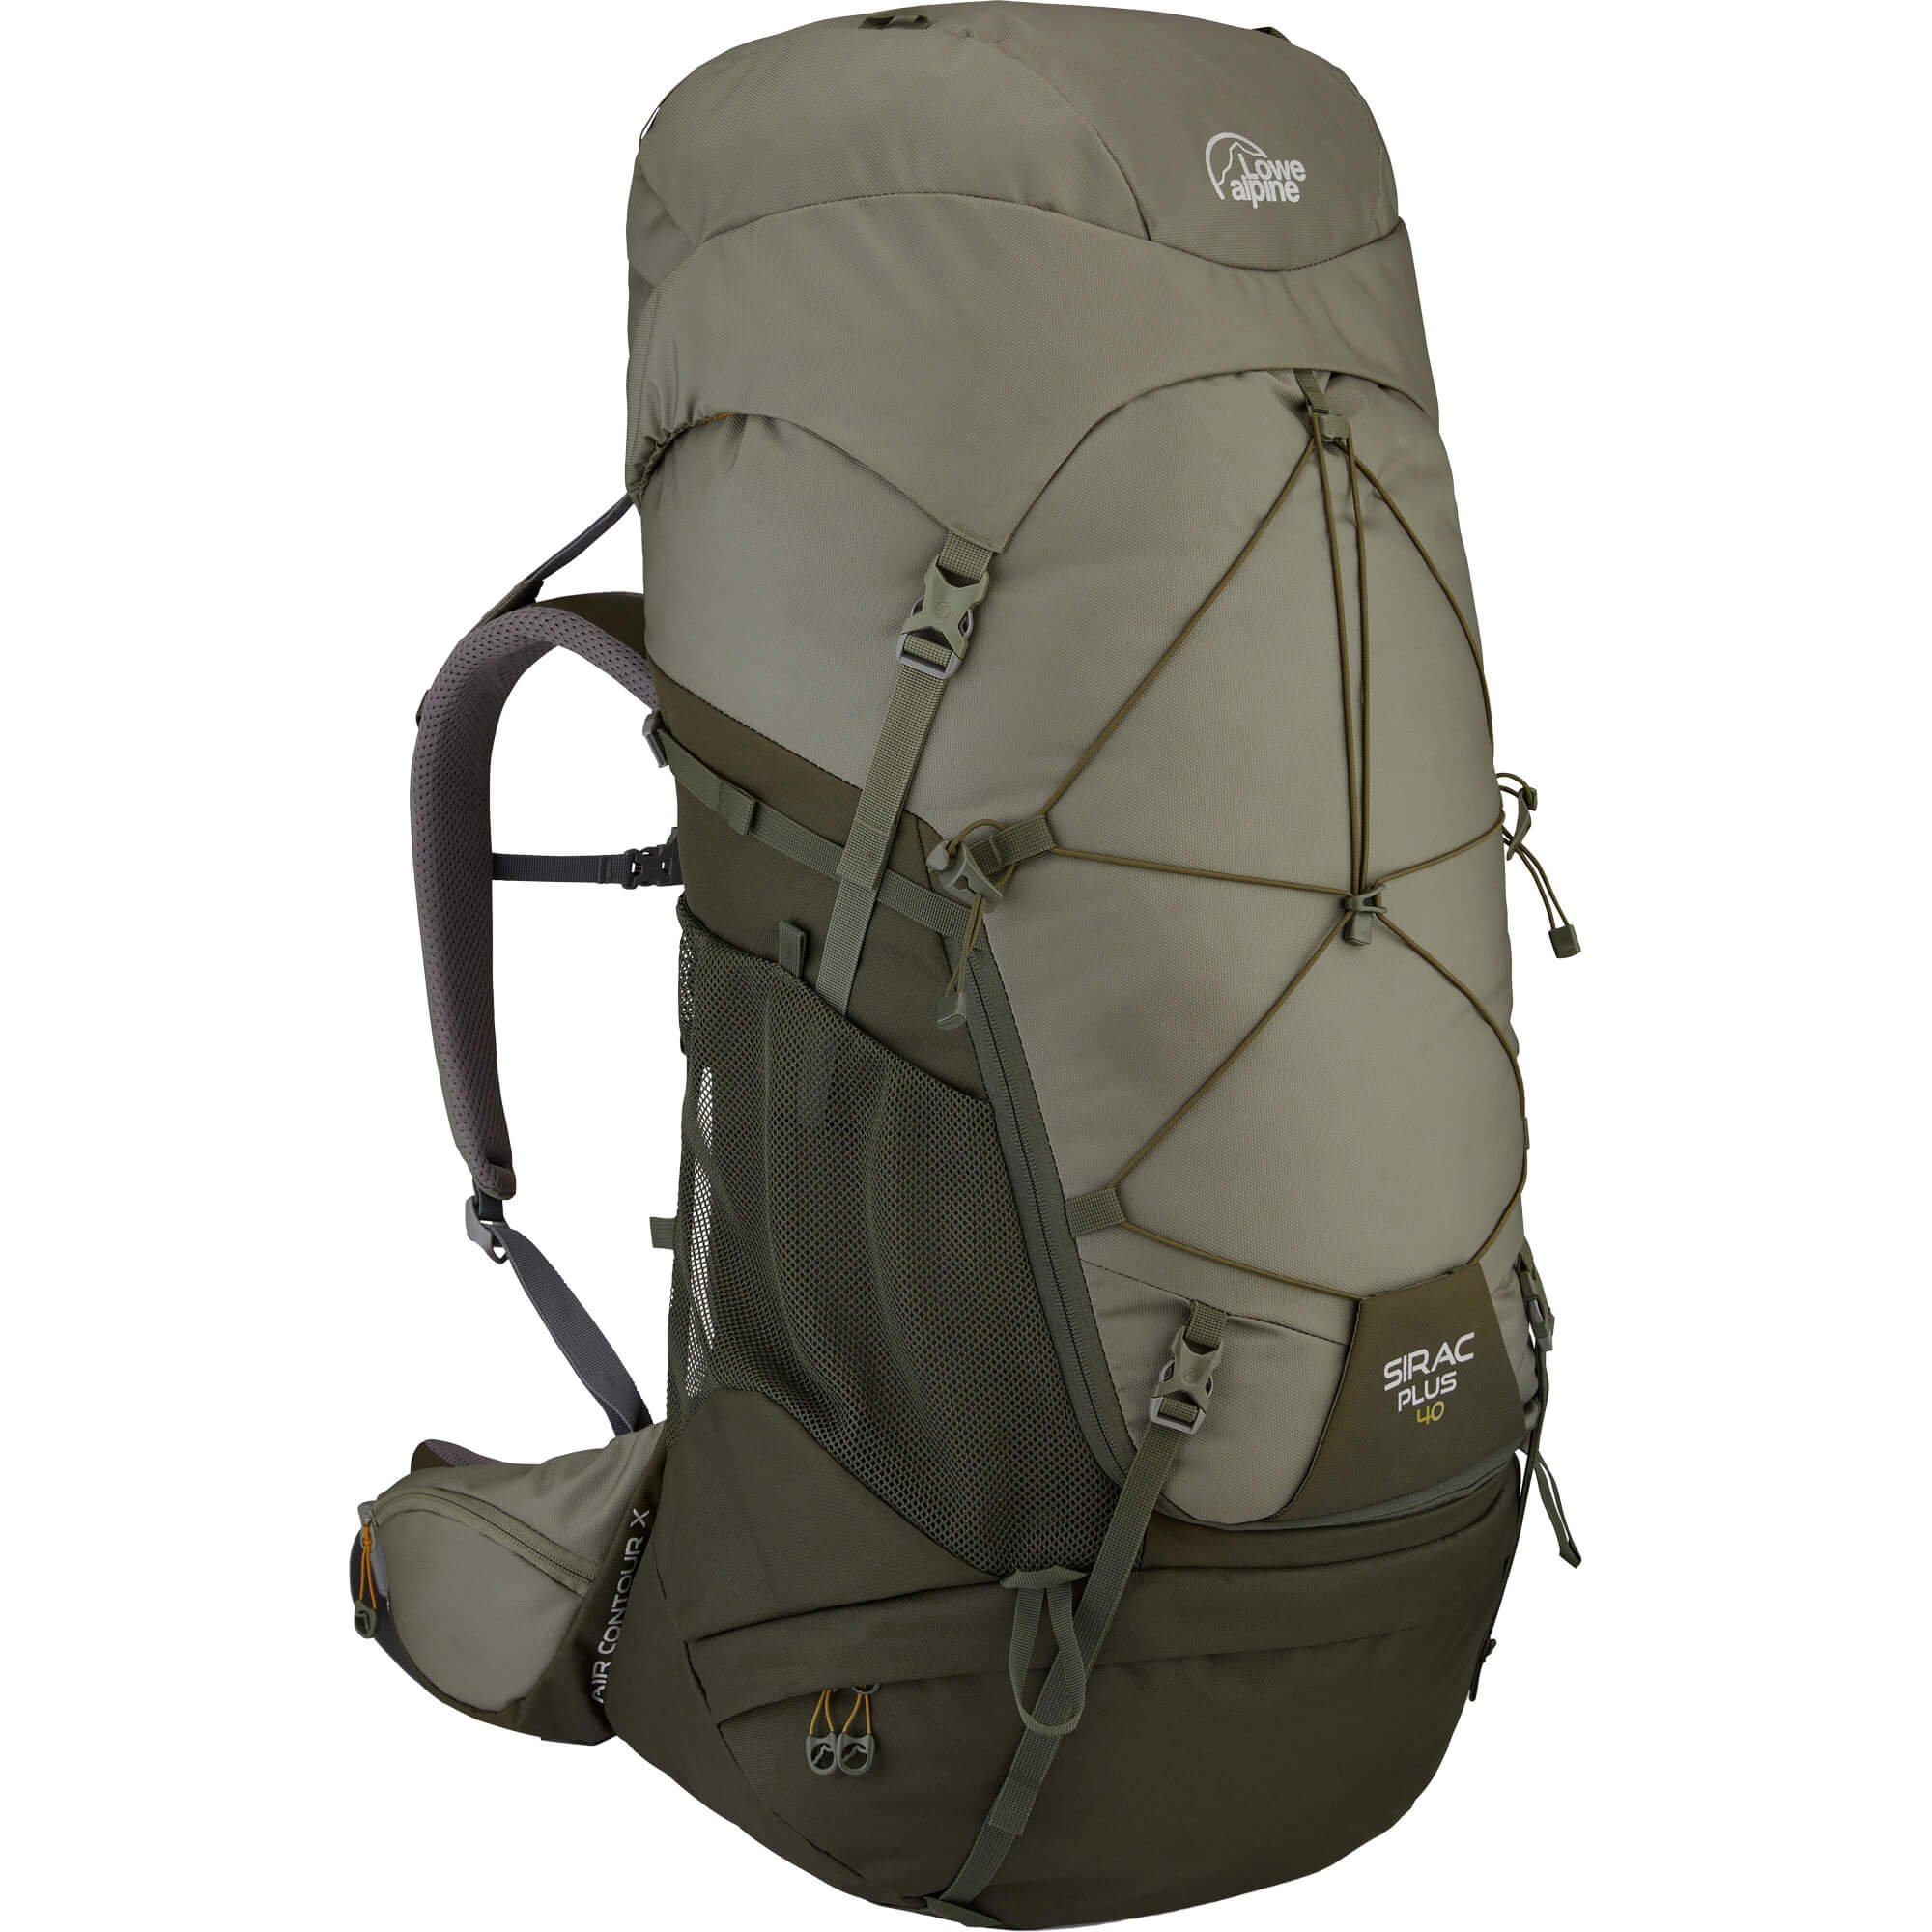 Photos - Backpack Lowe Alpine Sirac Plus 40 Trekking Pack, 40L | M/L Light Khaki/Army FMQ-48 